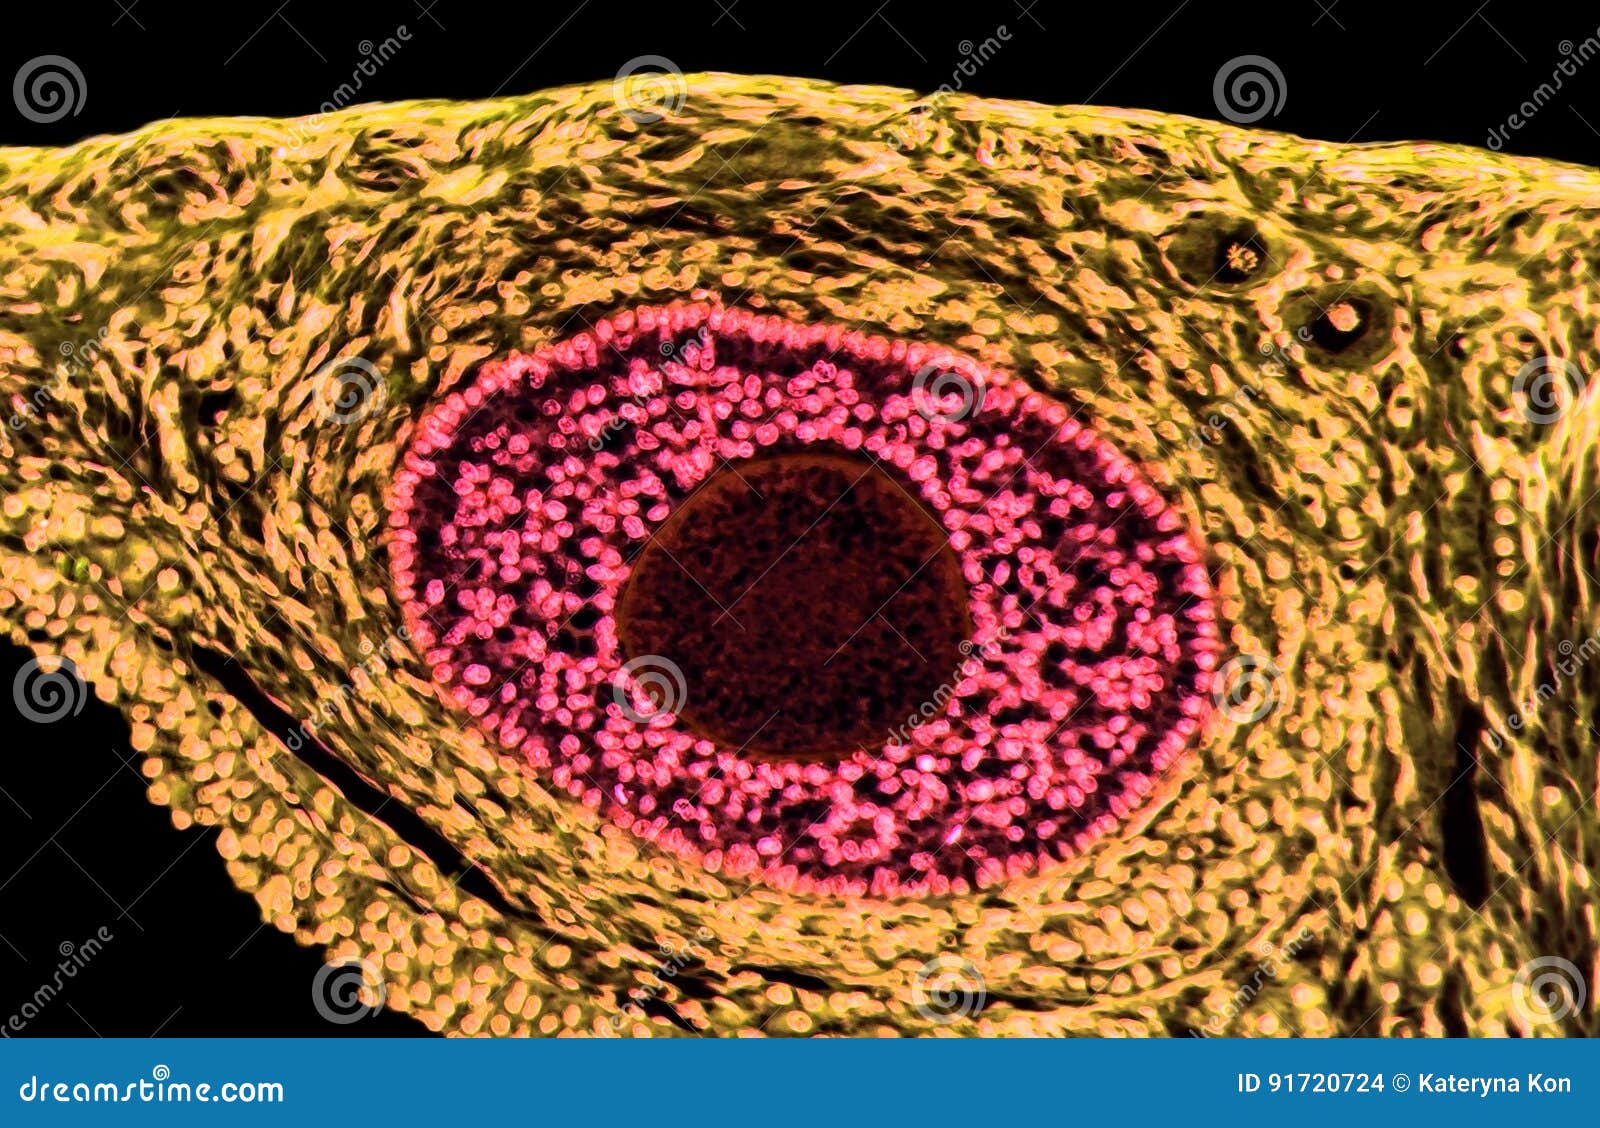 ovarian follicles. light microscopy